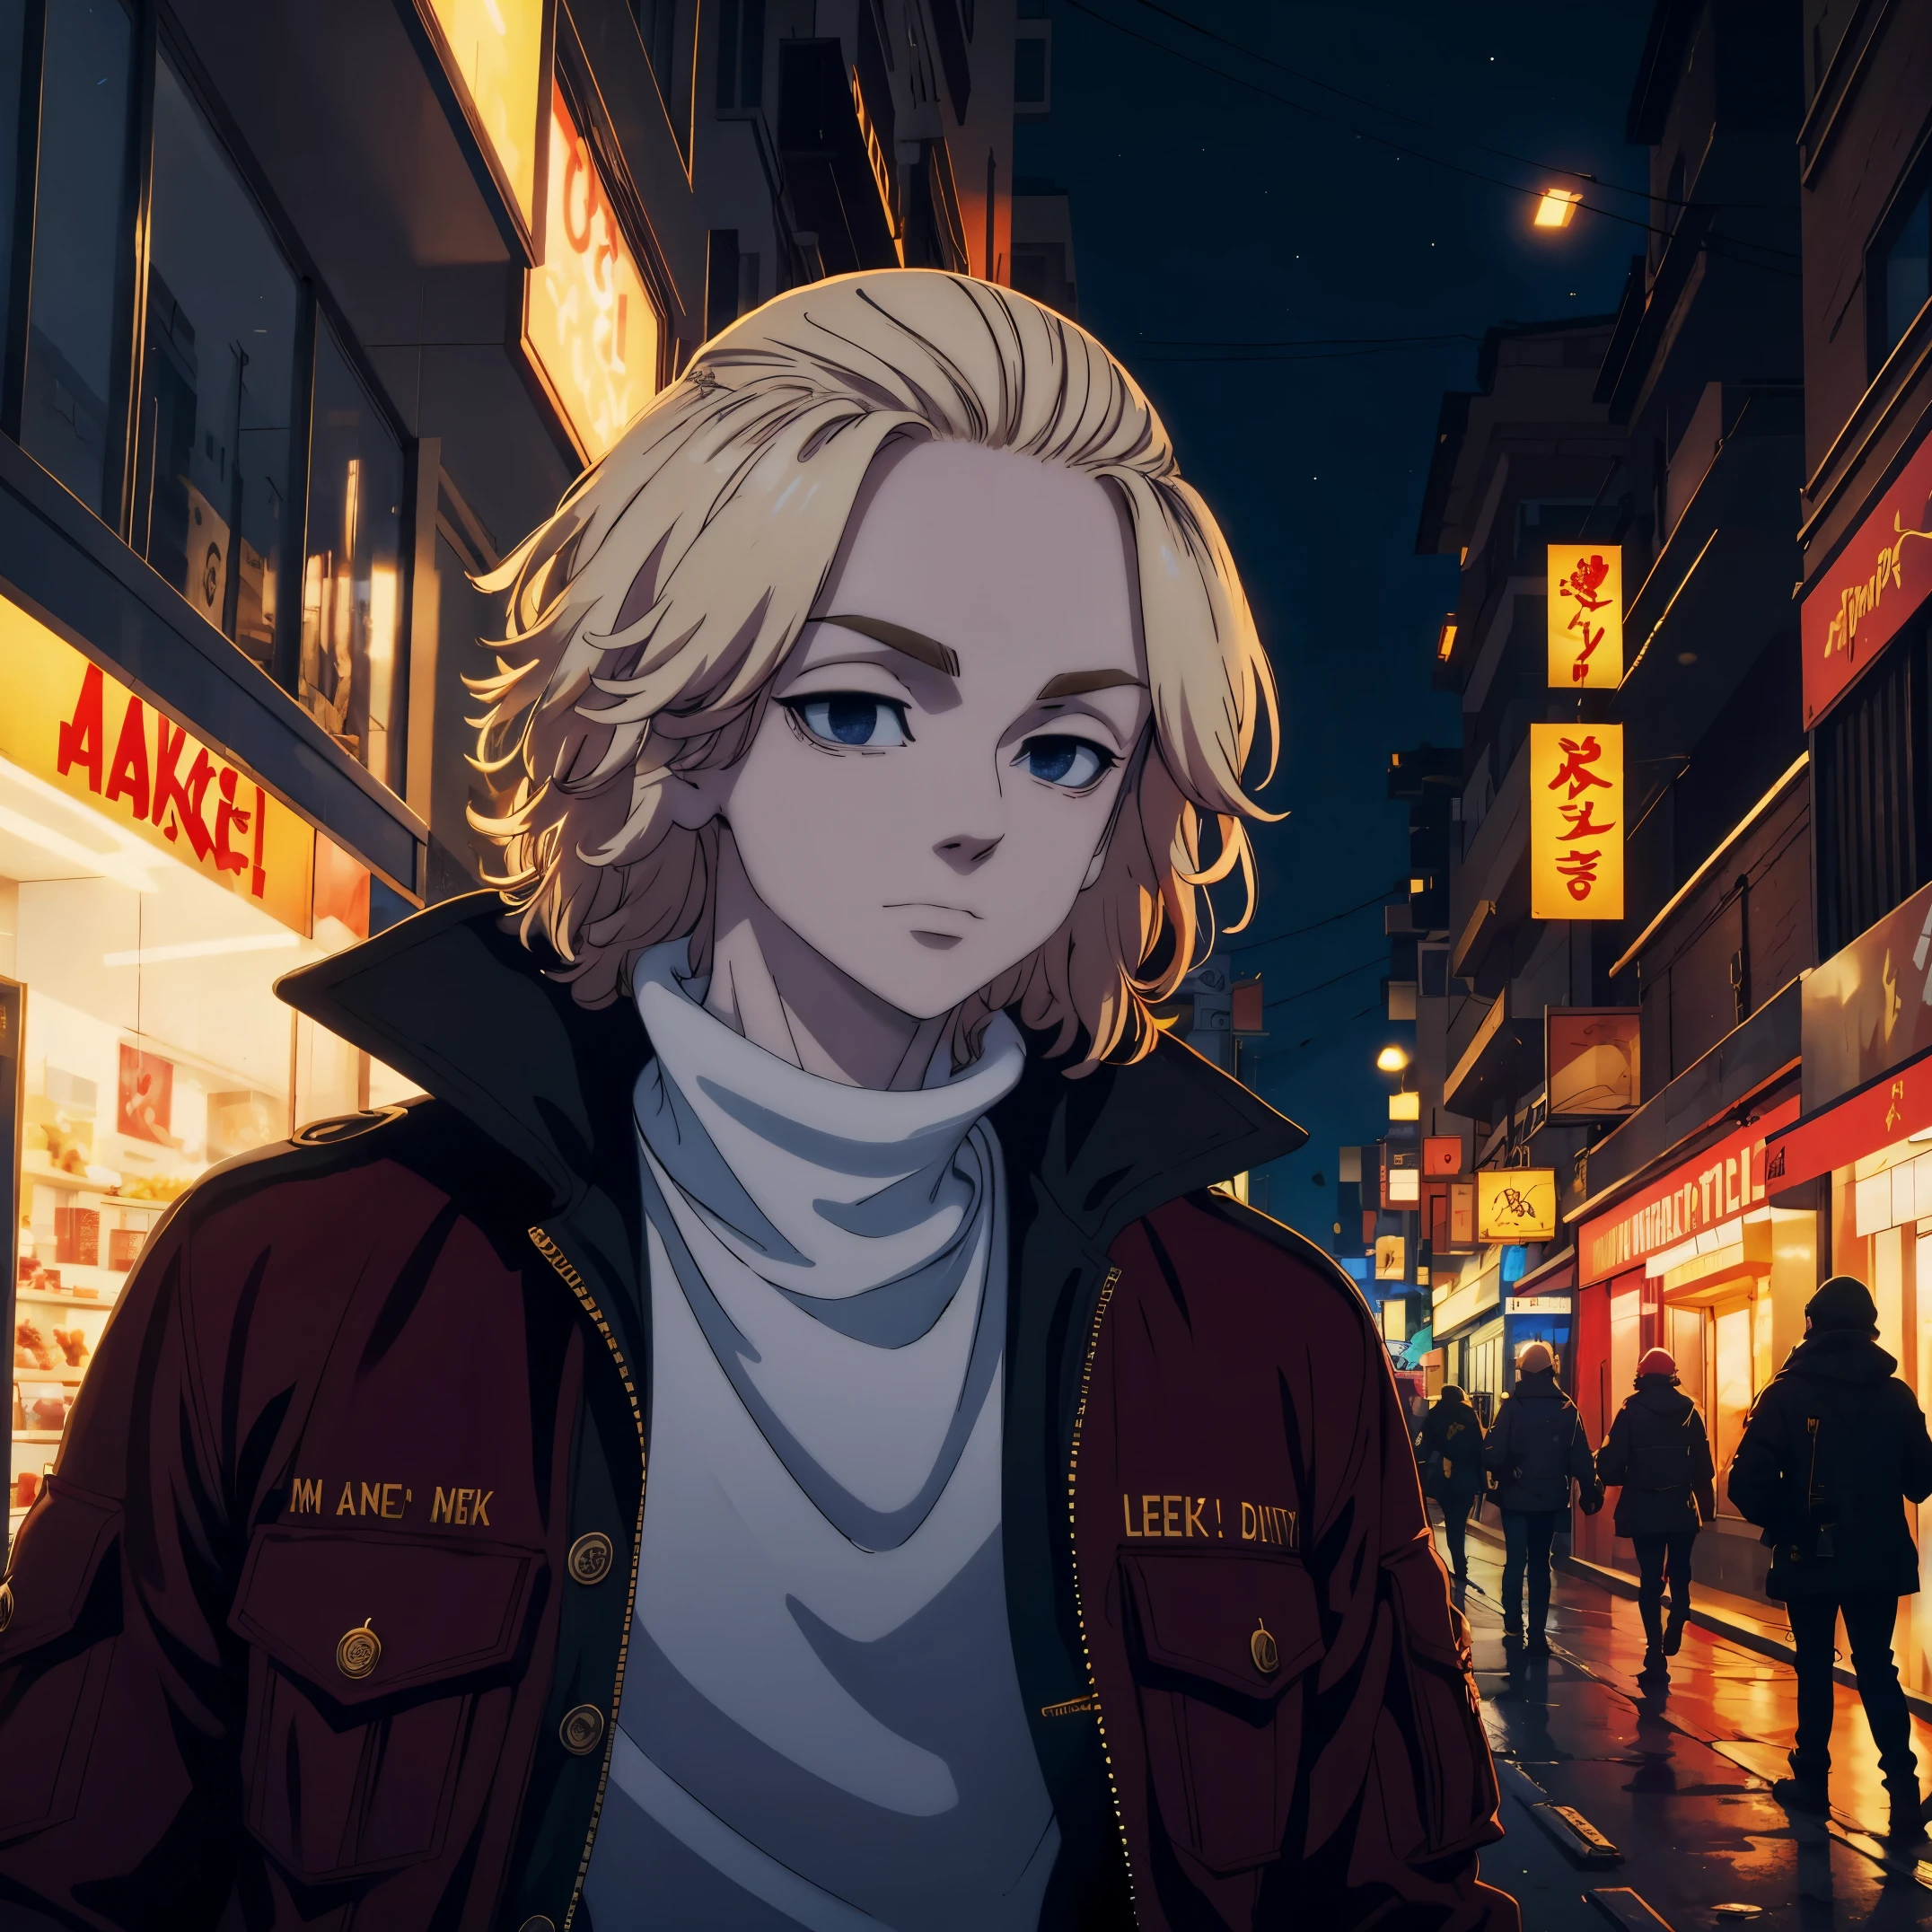 마, 빨간 재킷과 함께, 밤의 도시에서, 도시는 빛으로 가득하다, 그리고 그 사람은 평온한 얼굴을 하고 있어